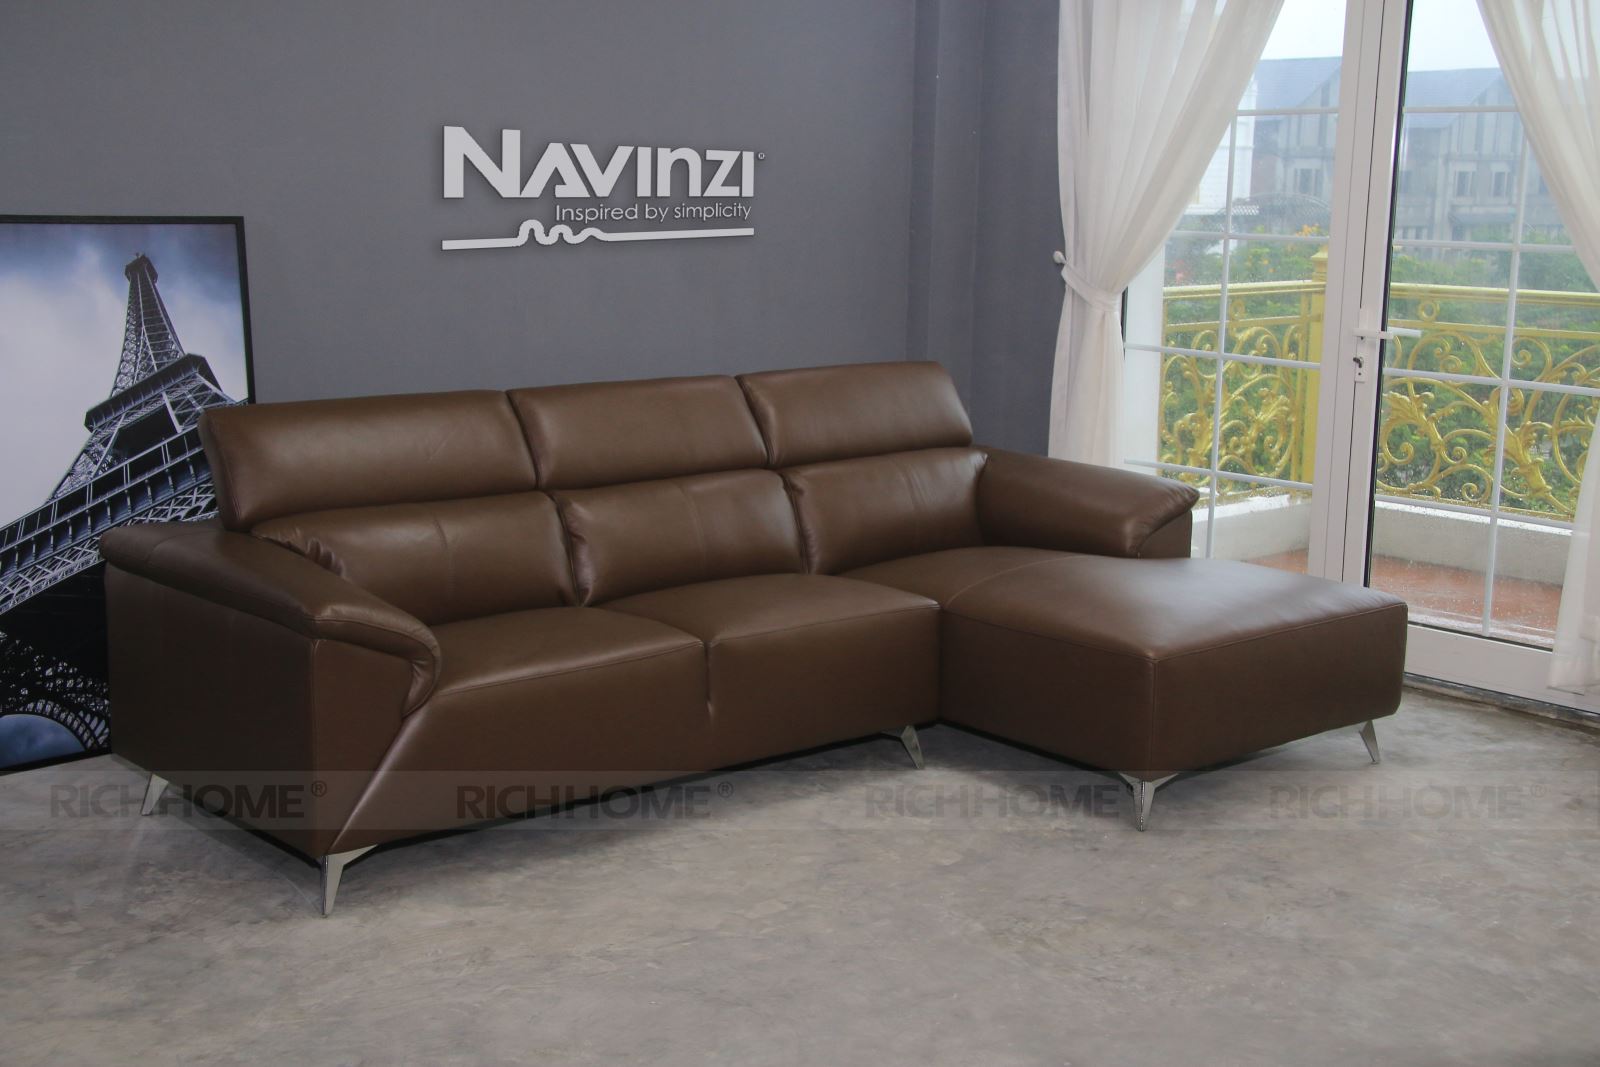 Đa dạng sắc màu ghế sofa nhập khẩu trên thị trường nội thất - Ảnh 6